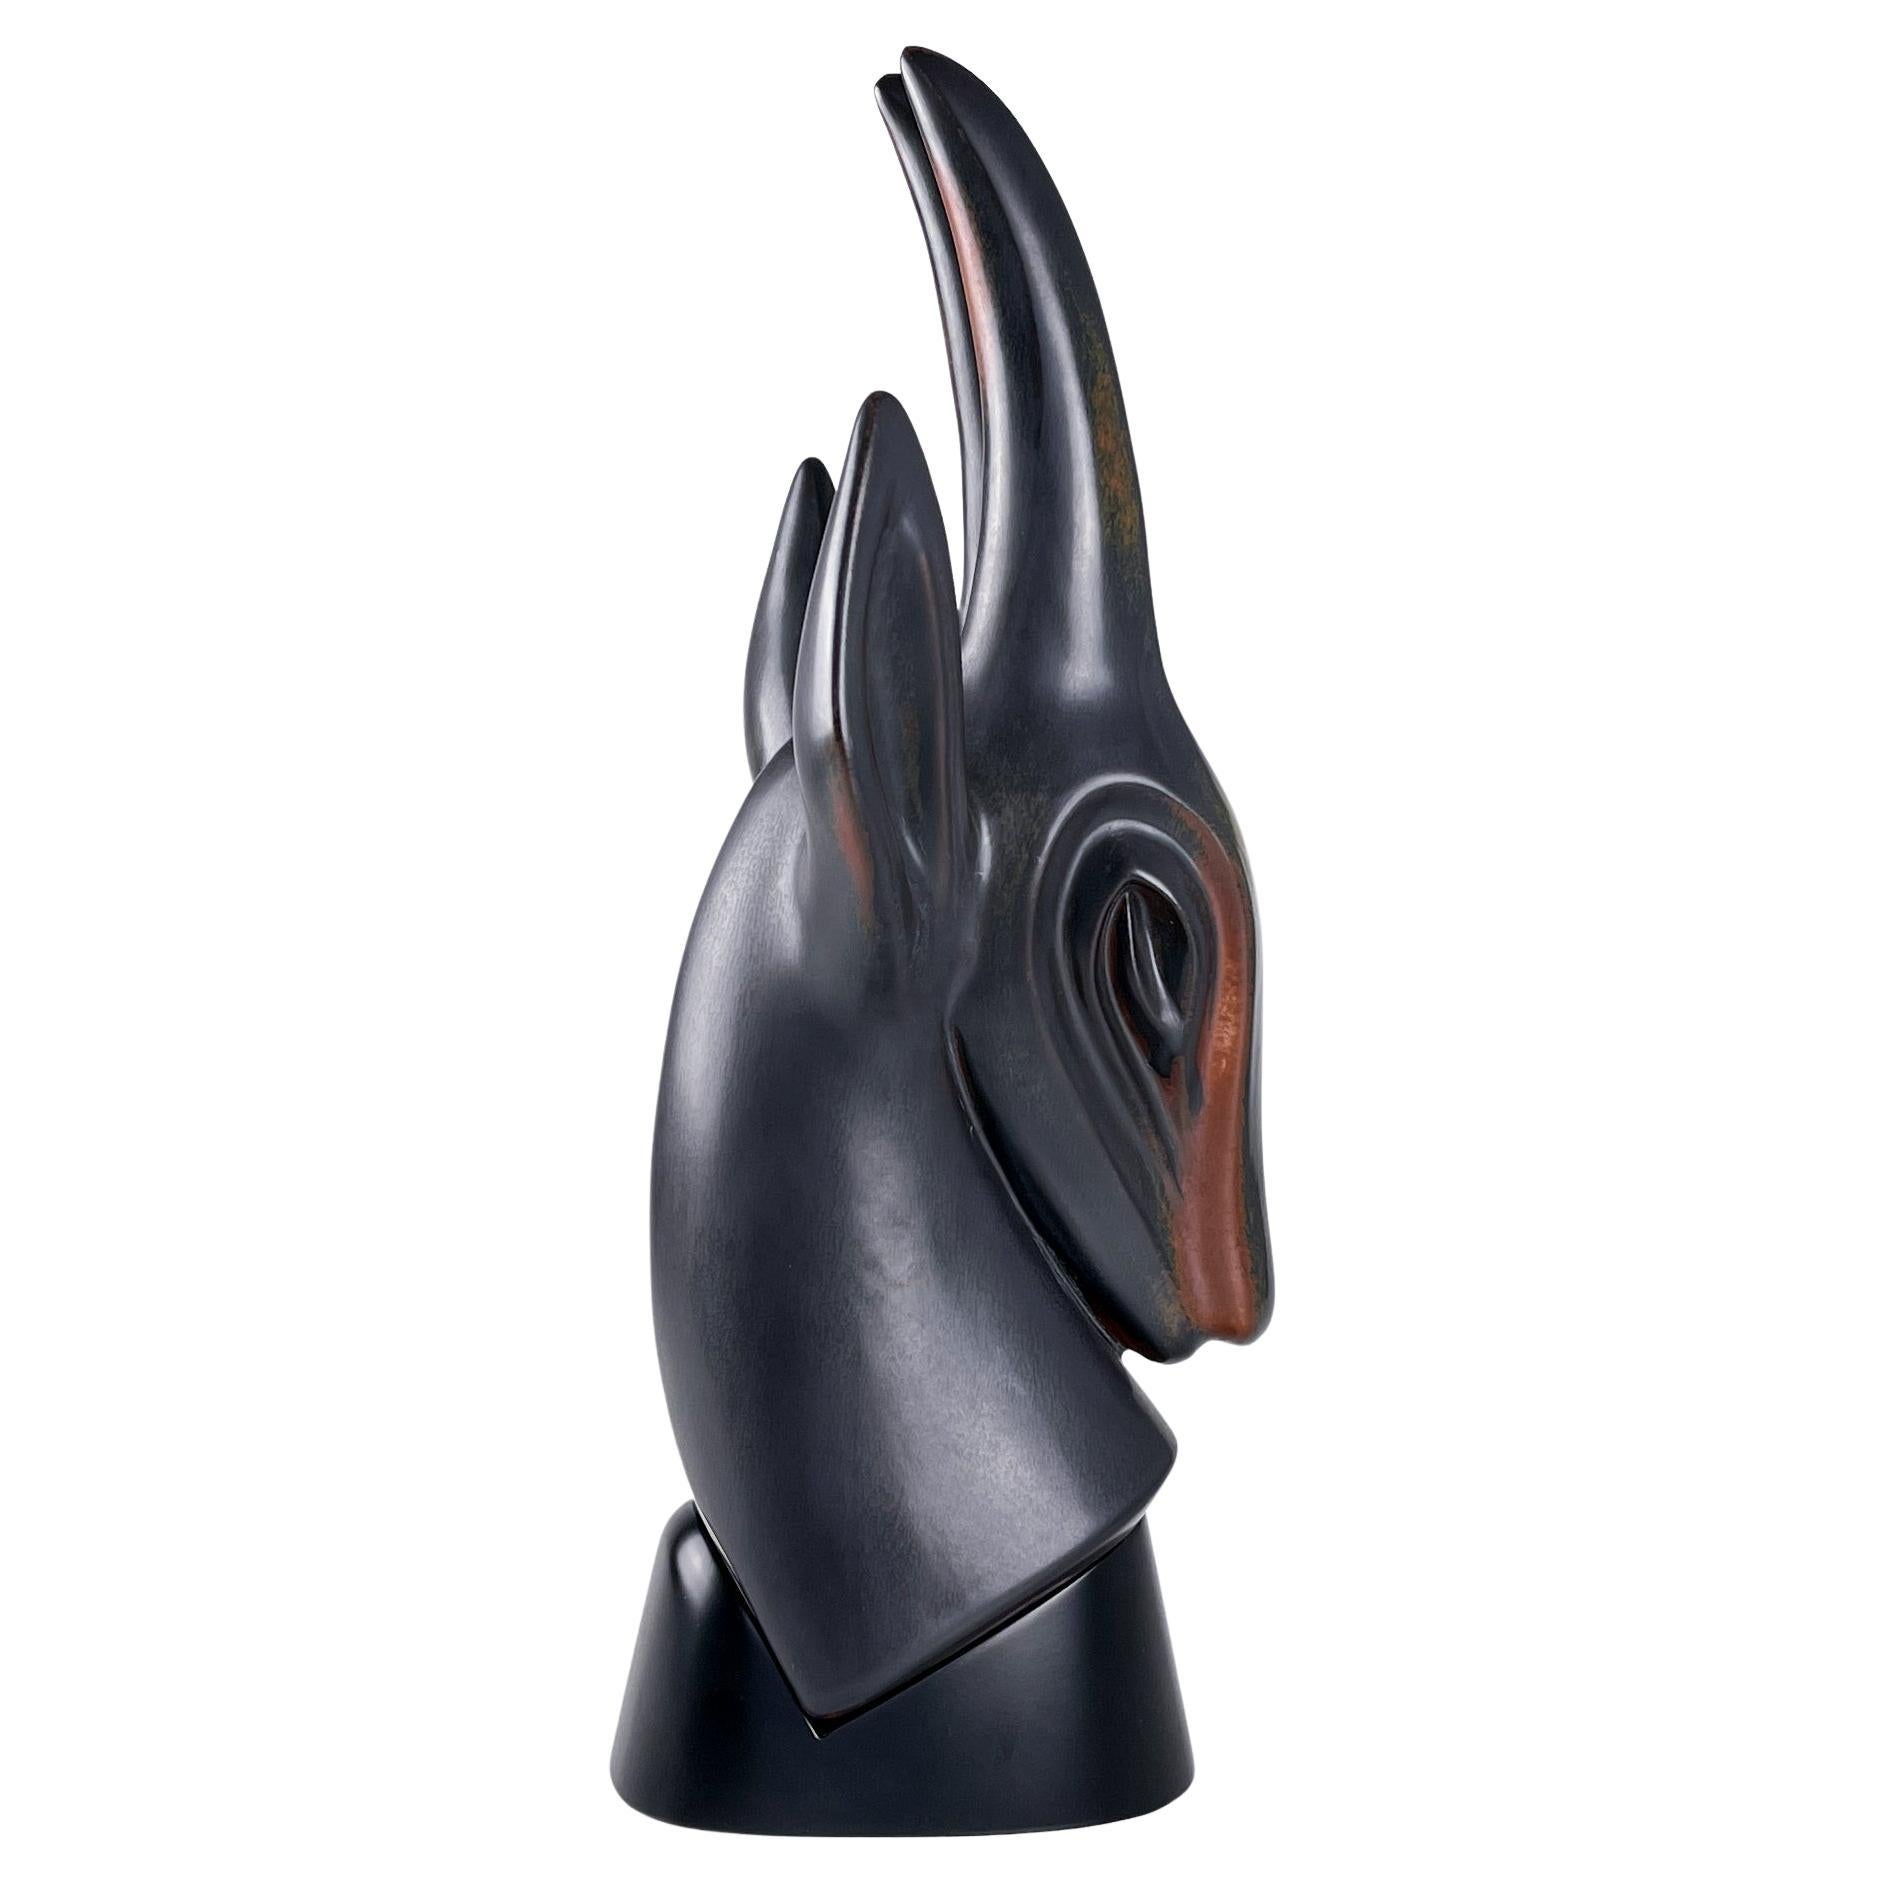 Gunnar Nylund, sculpture en grès d'une antilope, Rörstrand, Suède, vers 1955

Description
Grande sculpture en grès représentant une antilope, réalisée en émaux brun rougeâtre mat et brun foncé sur un socle en bois laqué noir satiné, fabriquée en